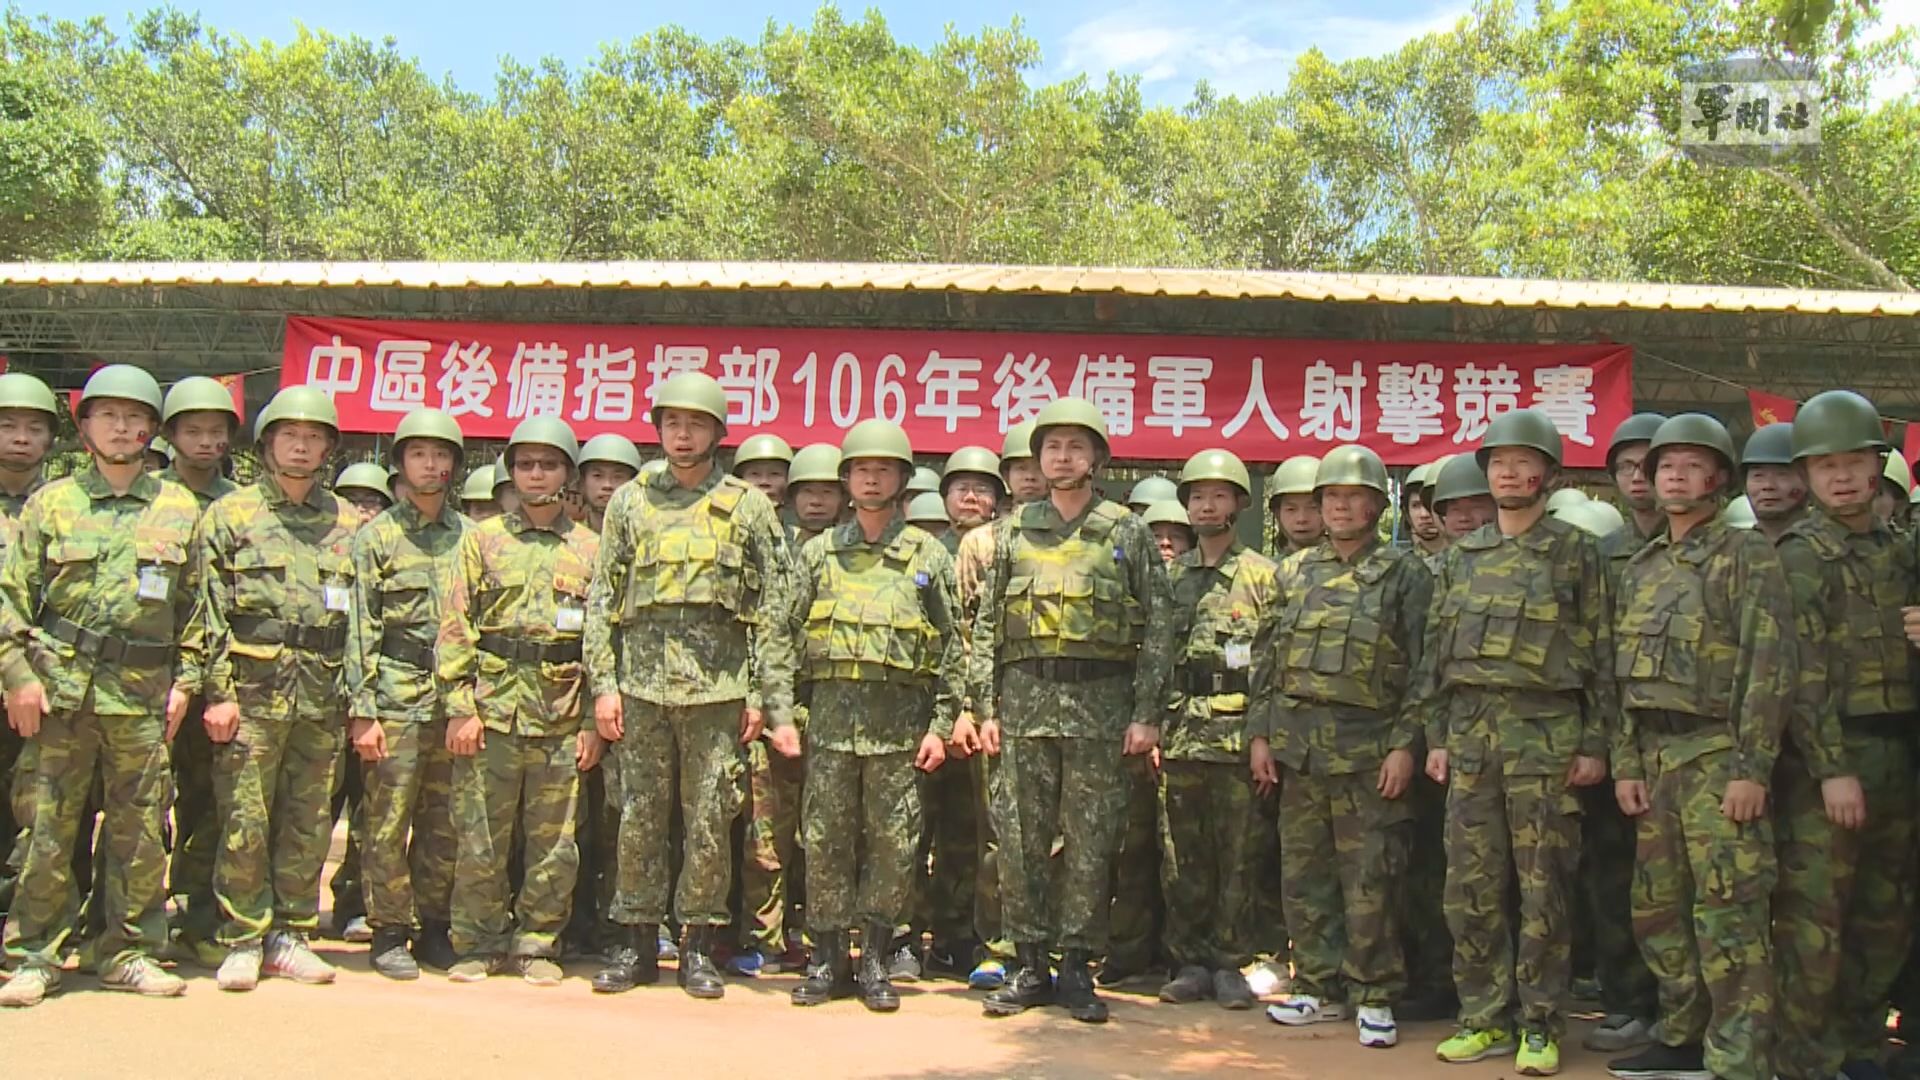 台灣據報教官、設備不足拖慢強化防衛訓練進度